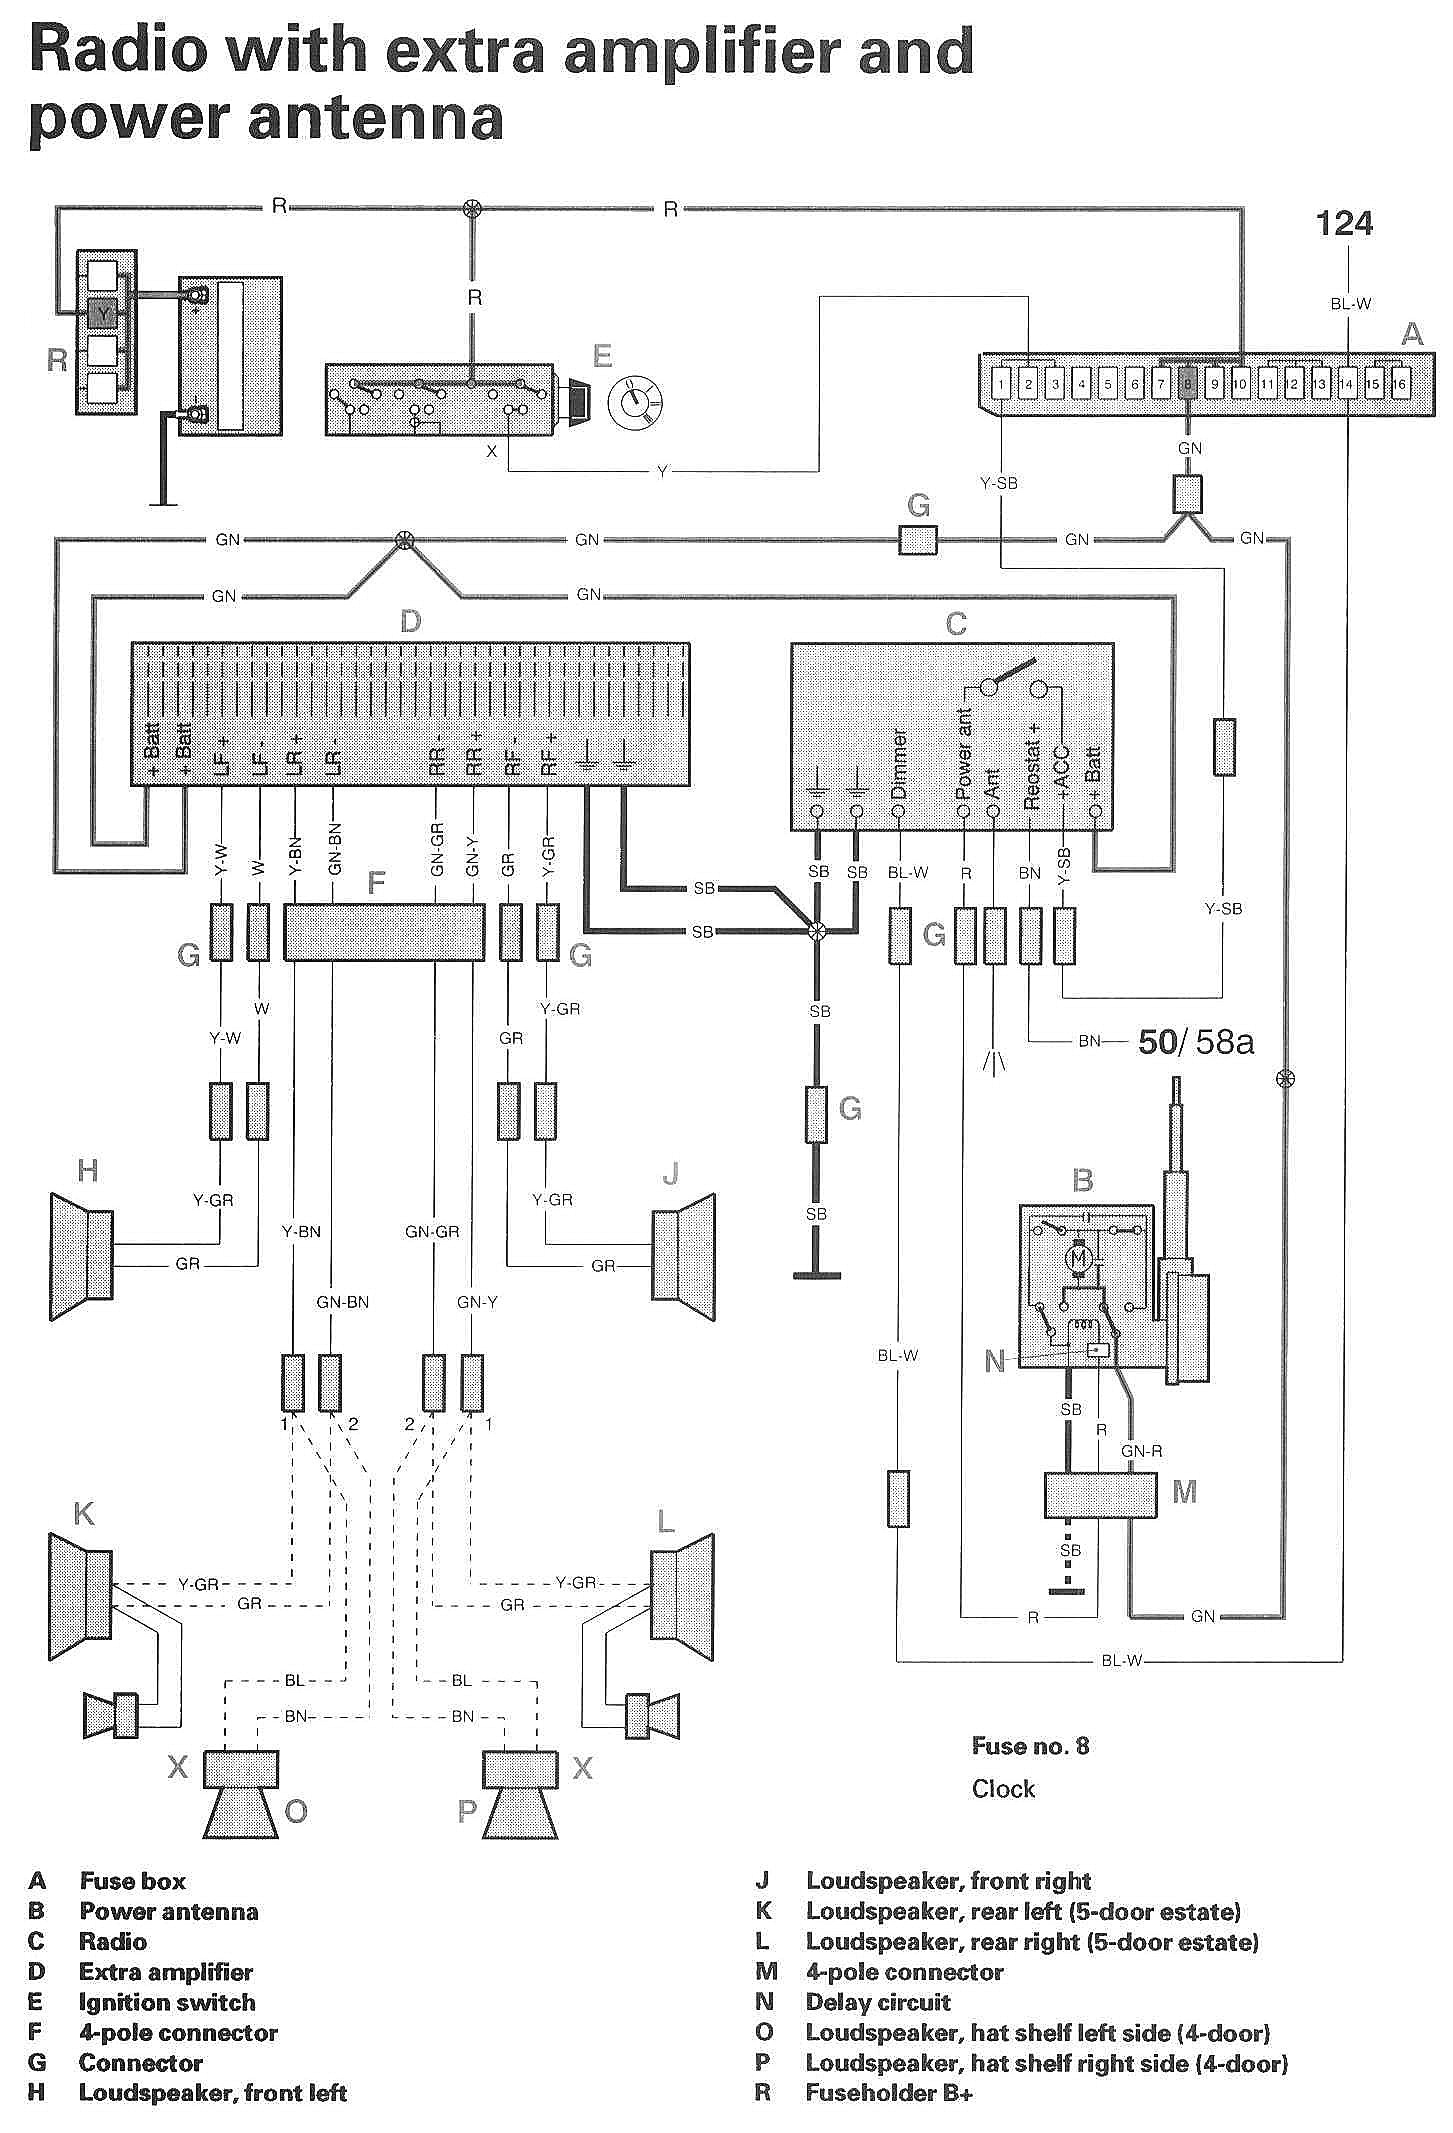 volvo v40 engine diagram volvo 740 wiring diagram fitfathers me amazing blurts of volvo v40 engine diagram 3 jpg